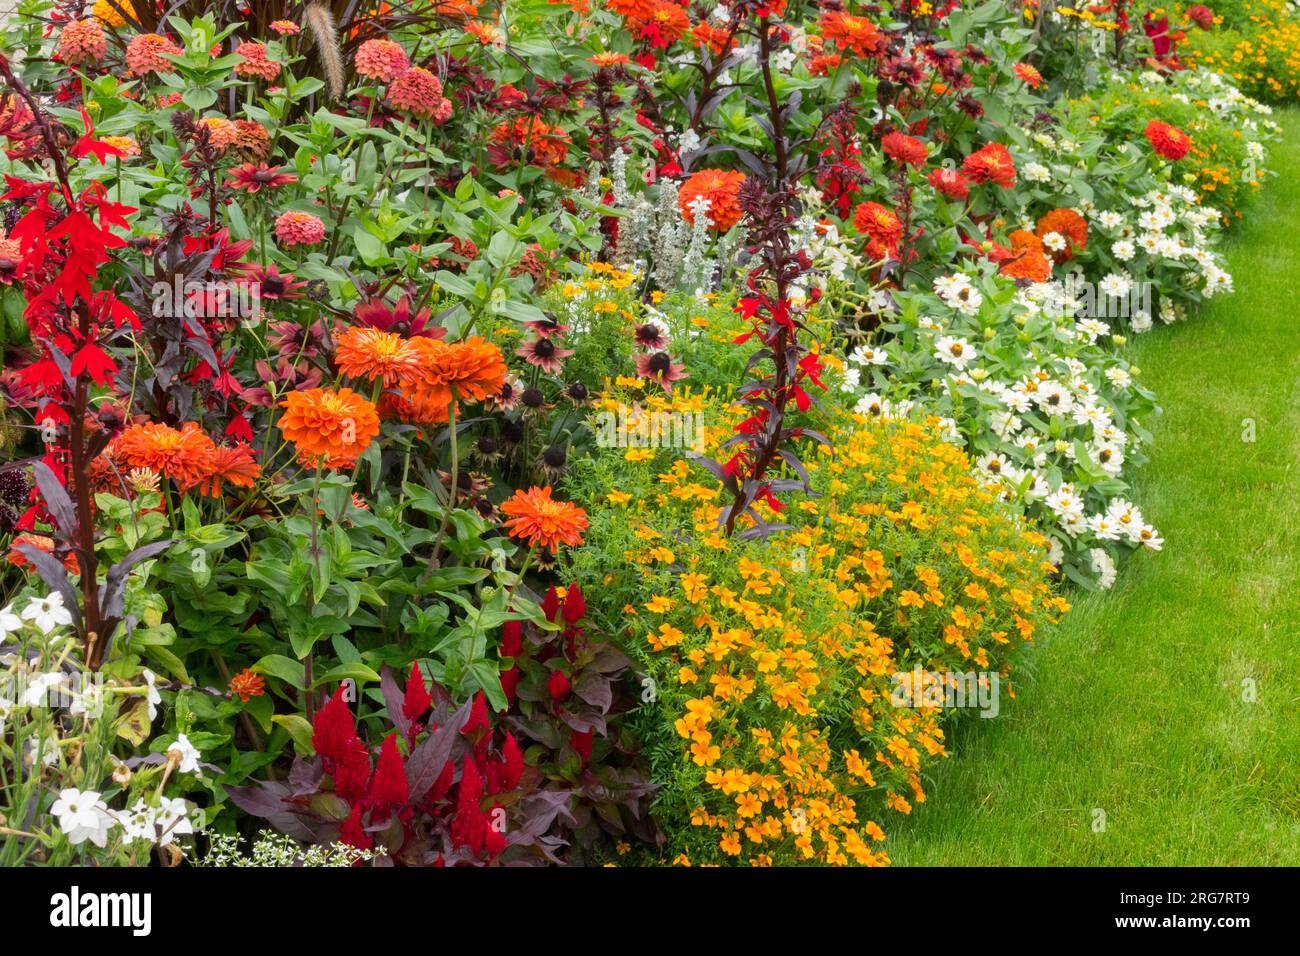 Plantes vivaces, annuelles et biennales en bordure jardin bordure pelouse parsemée de fleurs Zinnias Marigolds Celosia Lobelias Nicotiana et d'autres plantes à litière Banque D'Images